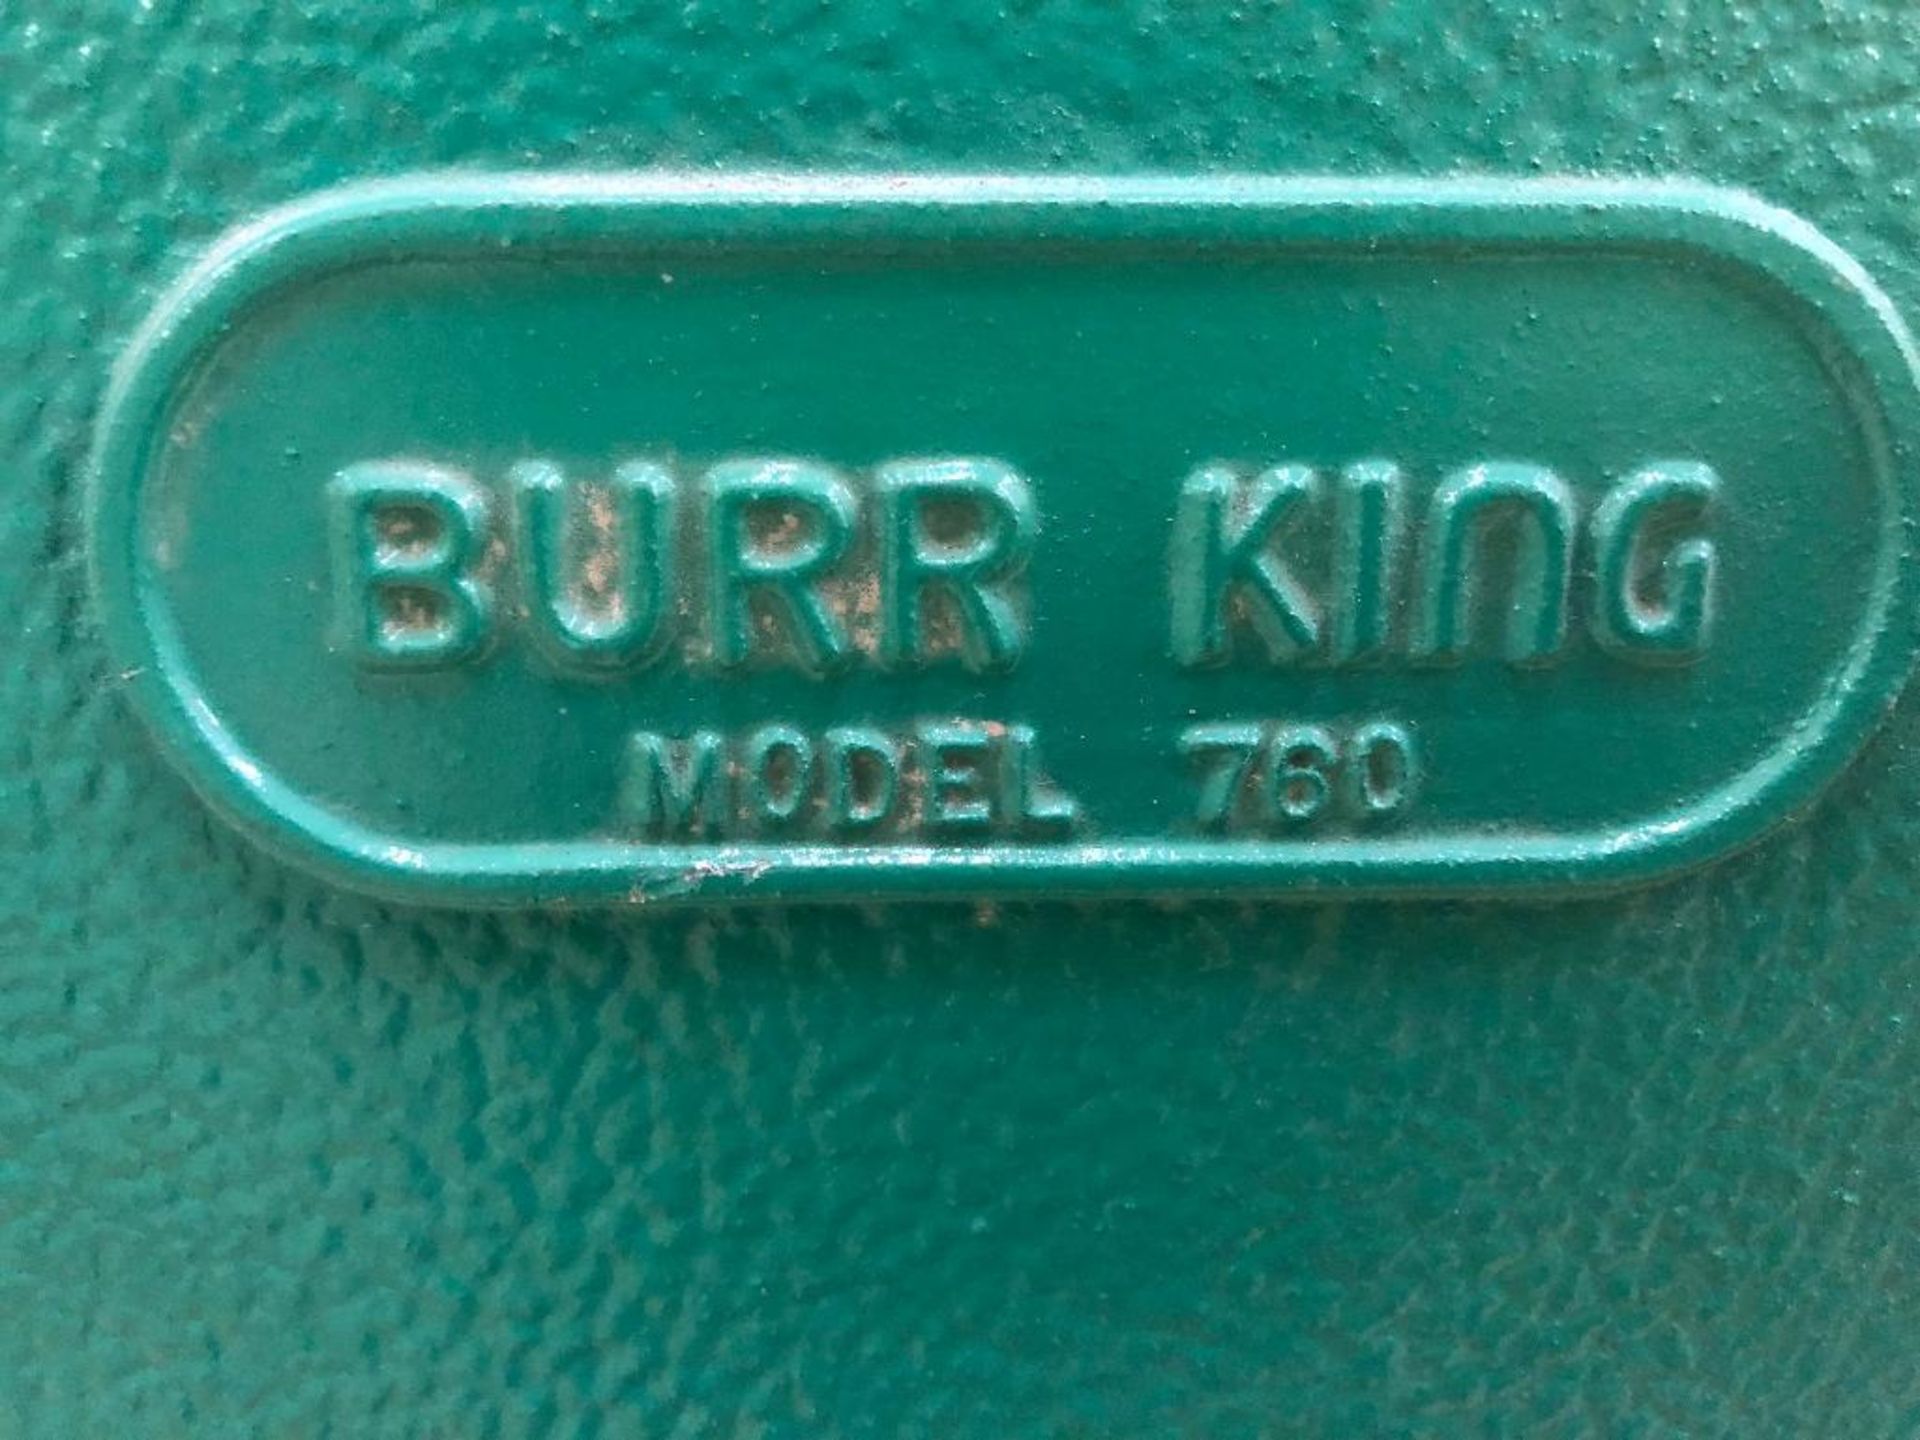 DESCRIPTION: BURR KING 760 THREE WHEEL BELT GRINDER. BRAND / MODEL: BURR KING 760 ADDITIONAL INFORMA - Image 6 of 6